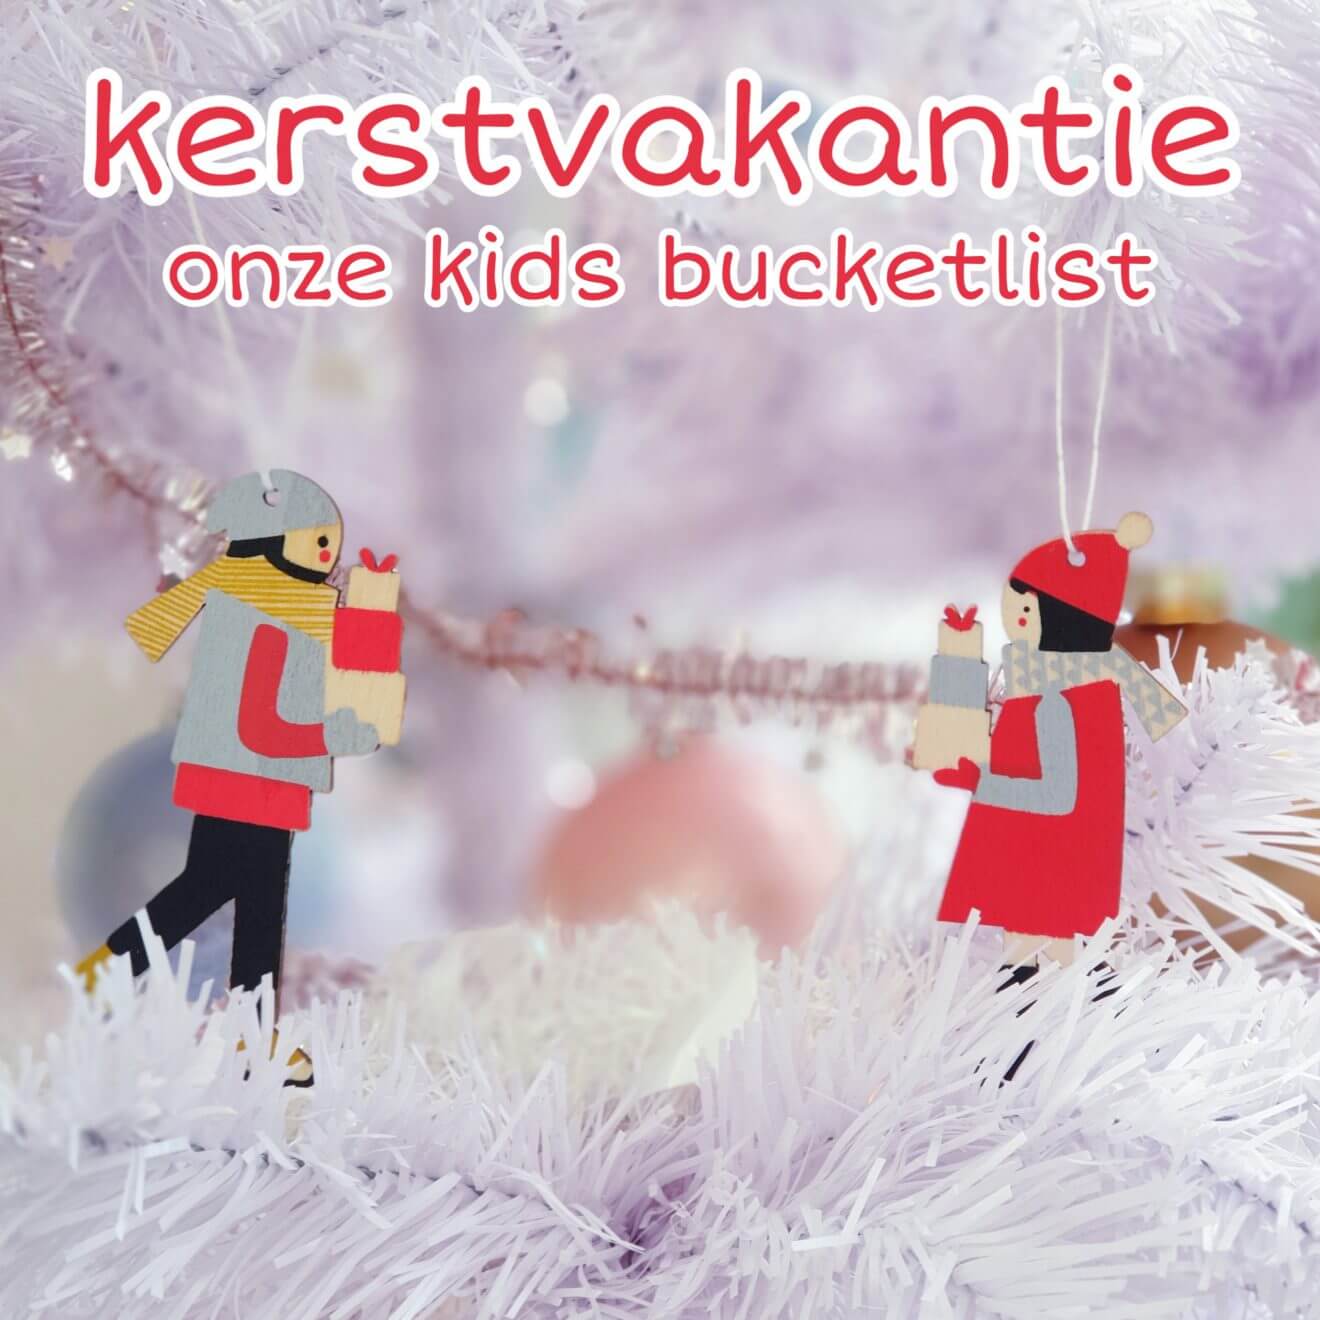 Onze kids bucketlist voor kerst: kerstvakantie activiteiten